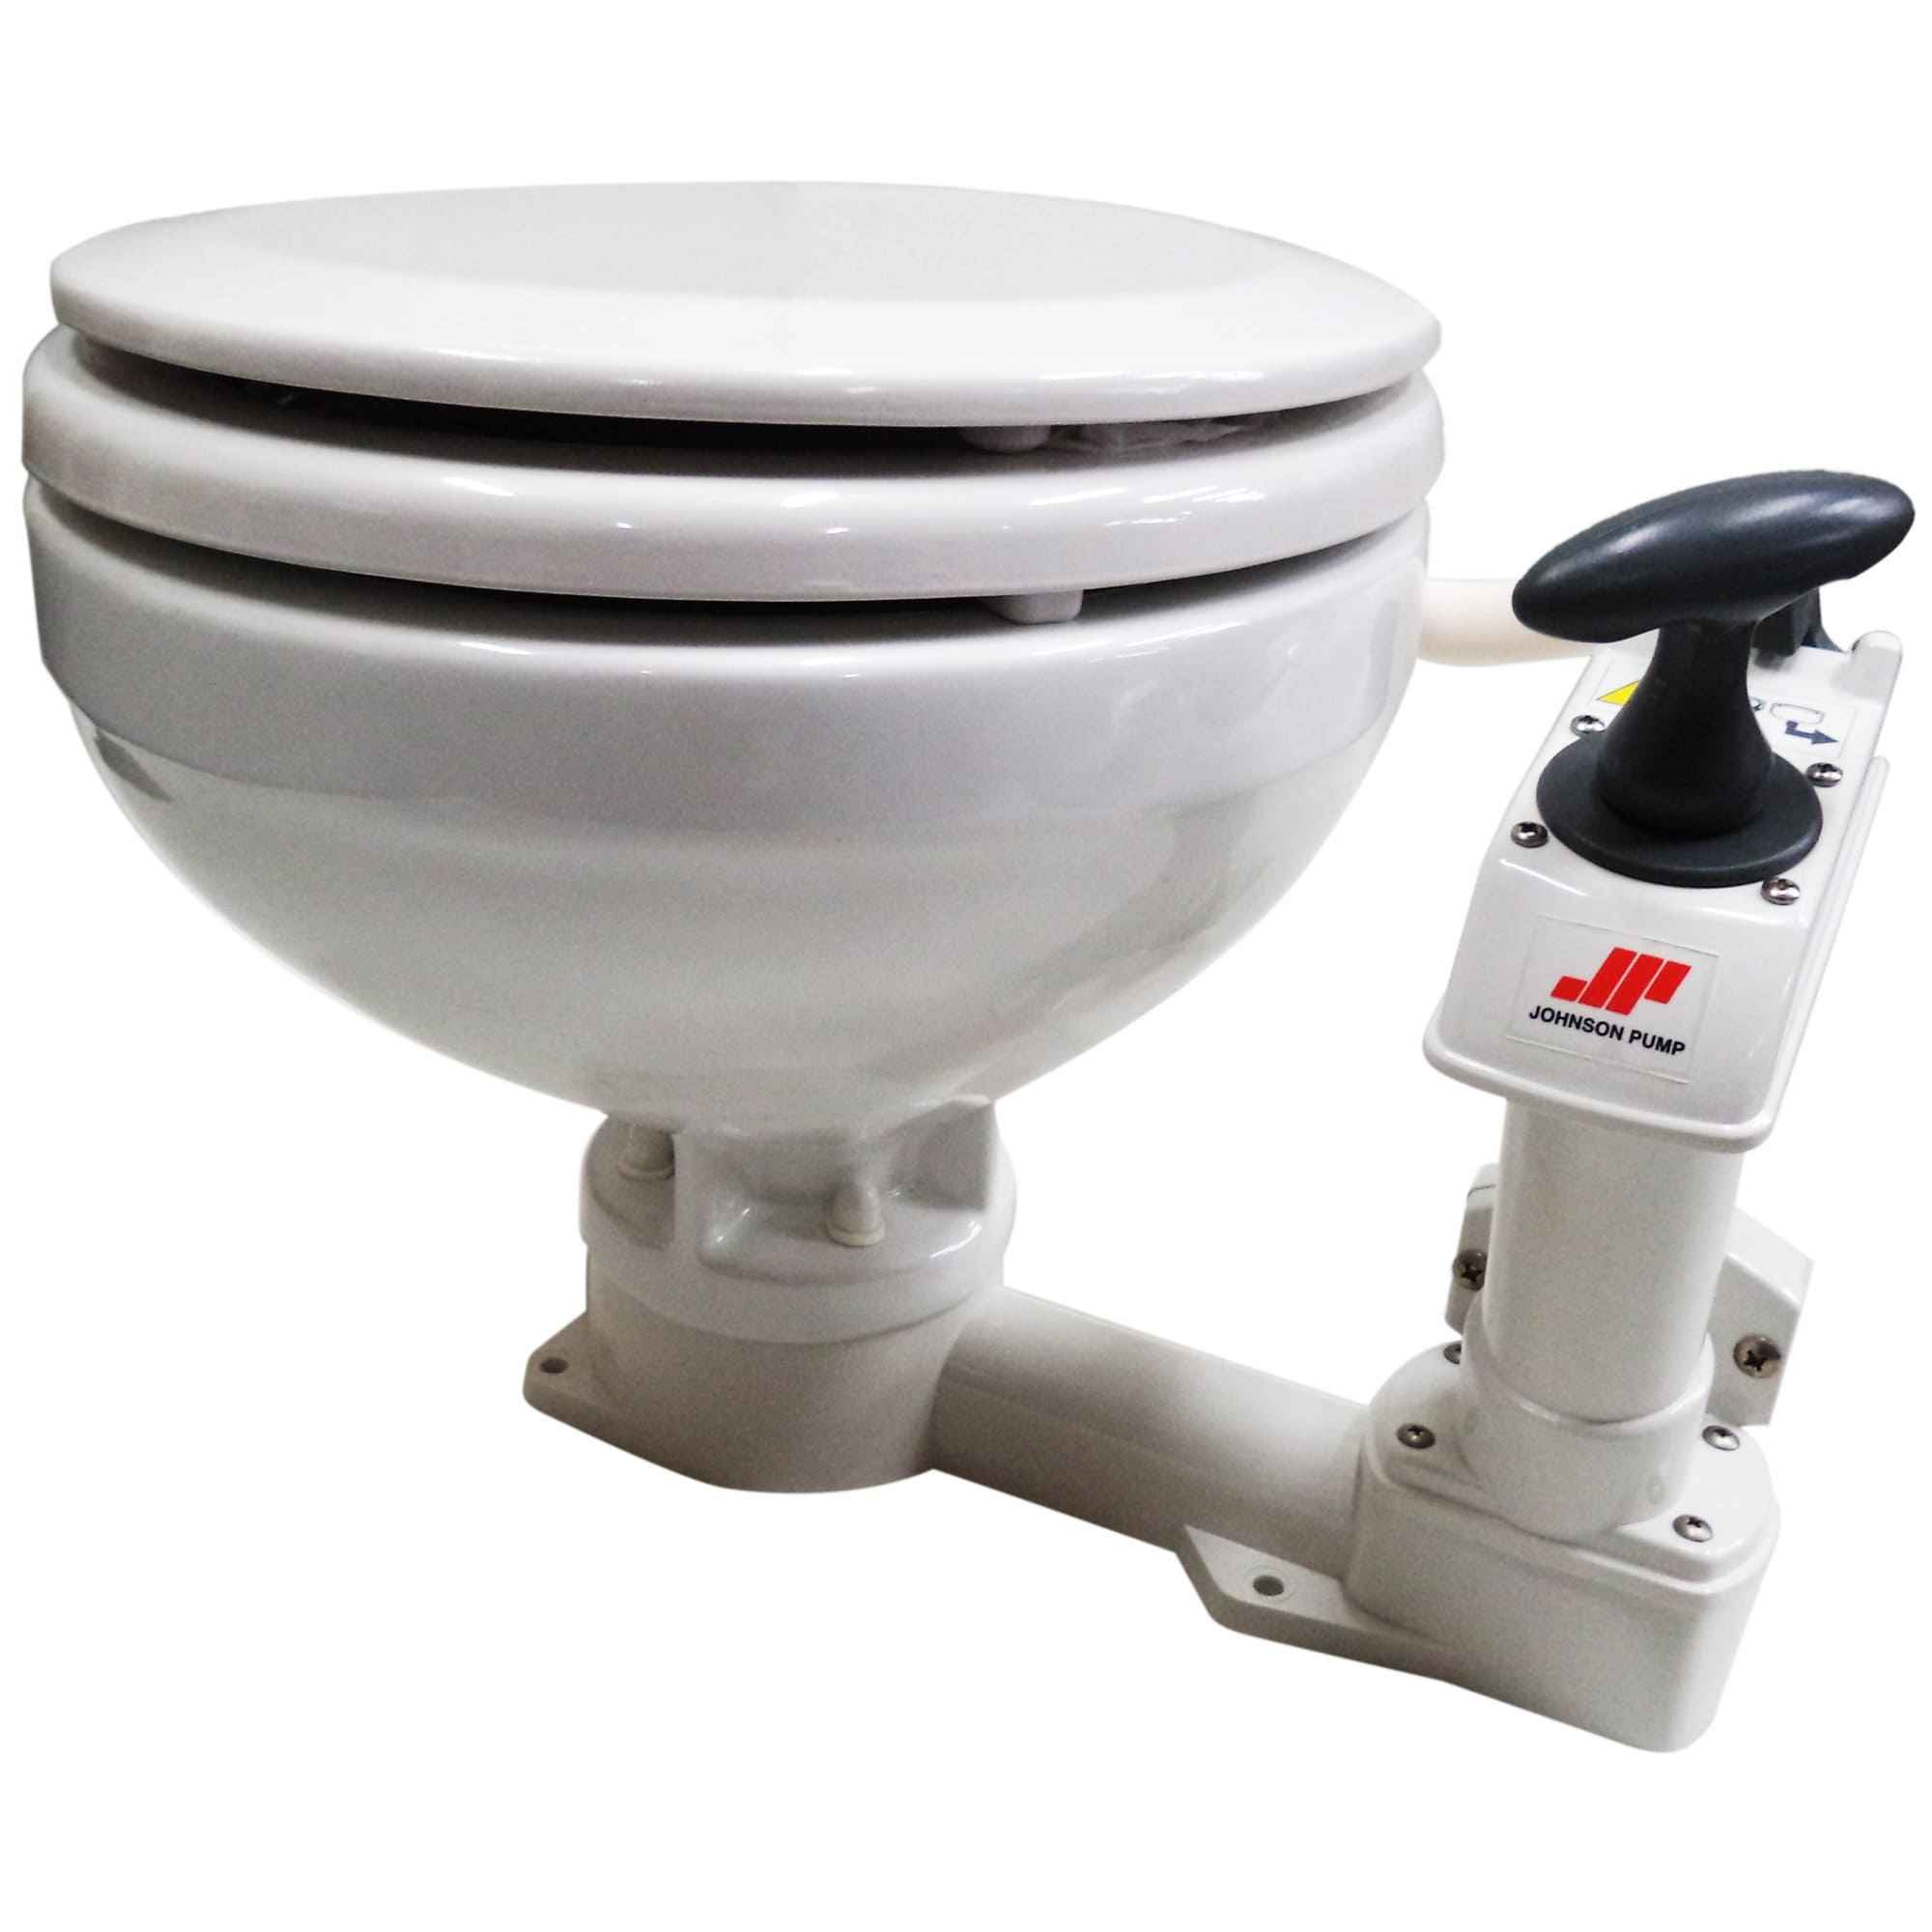 WC Marino per Barche Johnson con Pompa Manuale Aqua-T Compact